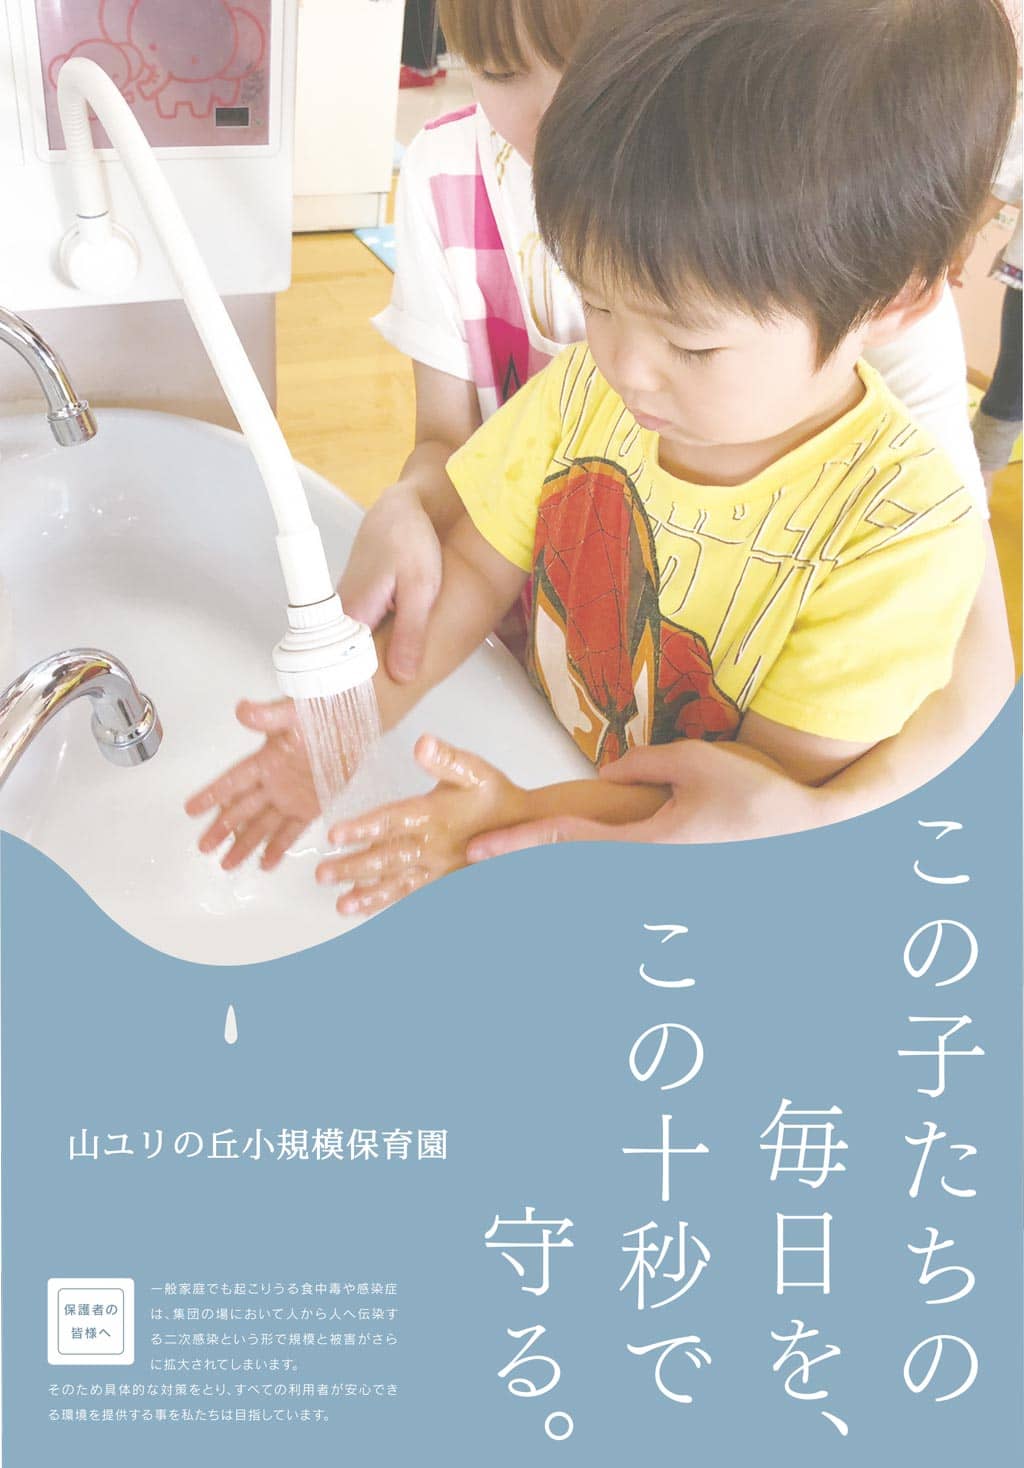 子ども施設用に作られた洗浄除菌水「ポラリエット」※表面